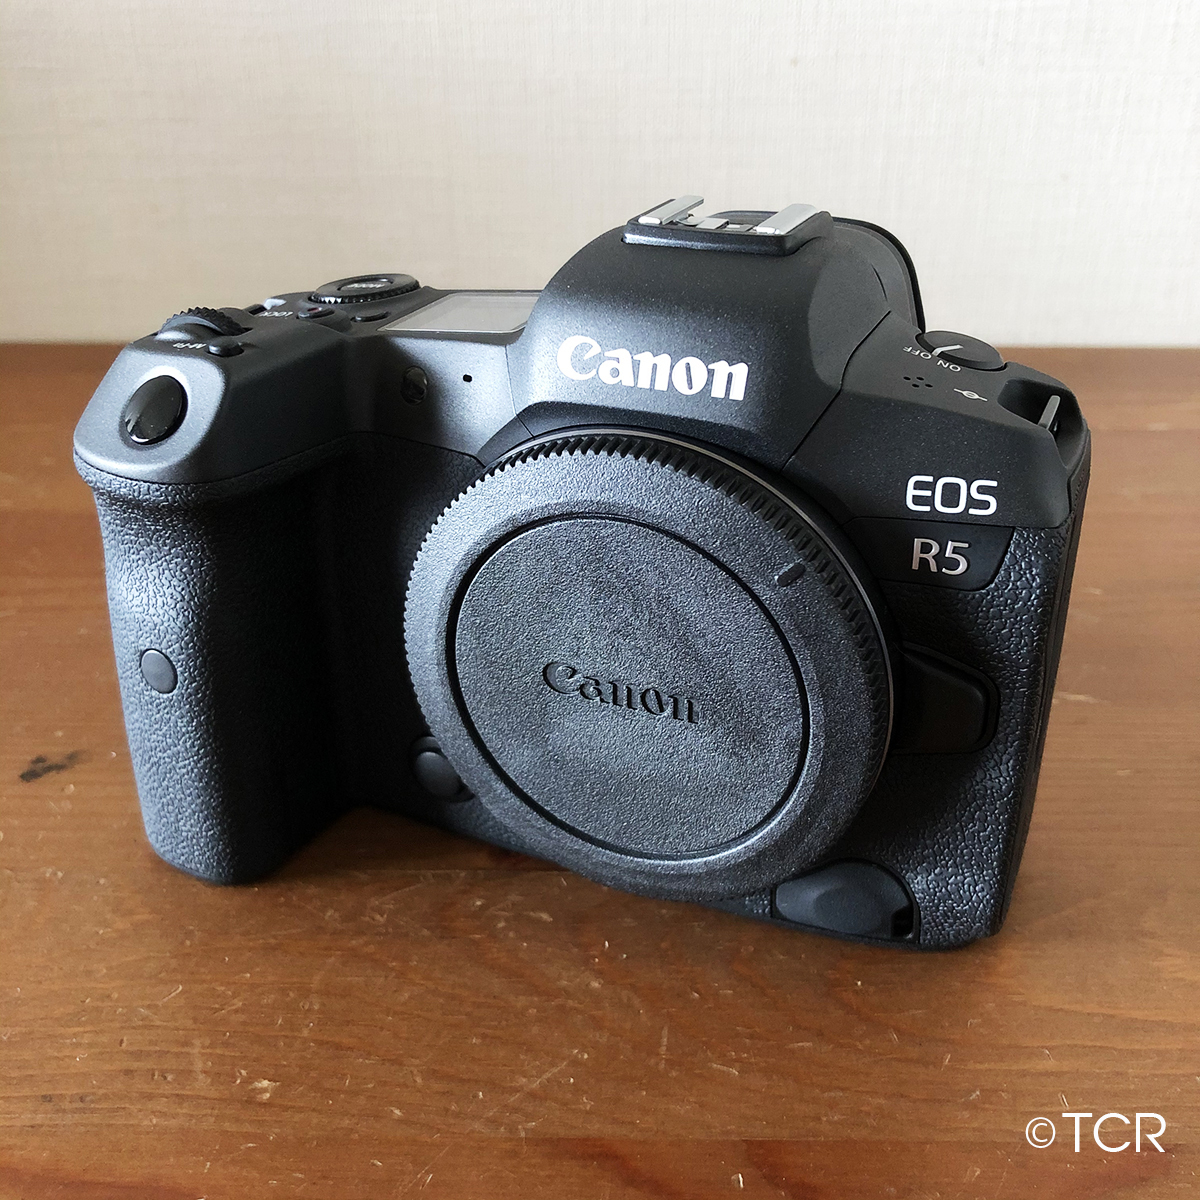  доставка домой в аренду 3 день # Canon EOS R5 корпус #4980 иен /3 день 